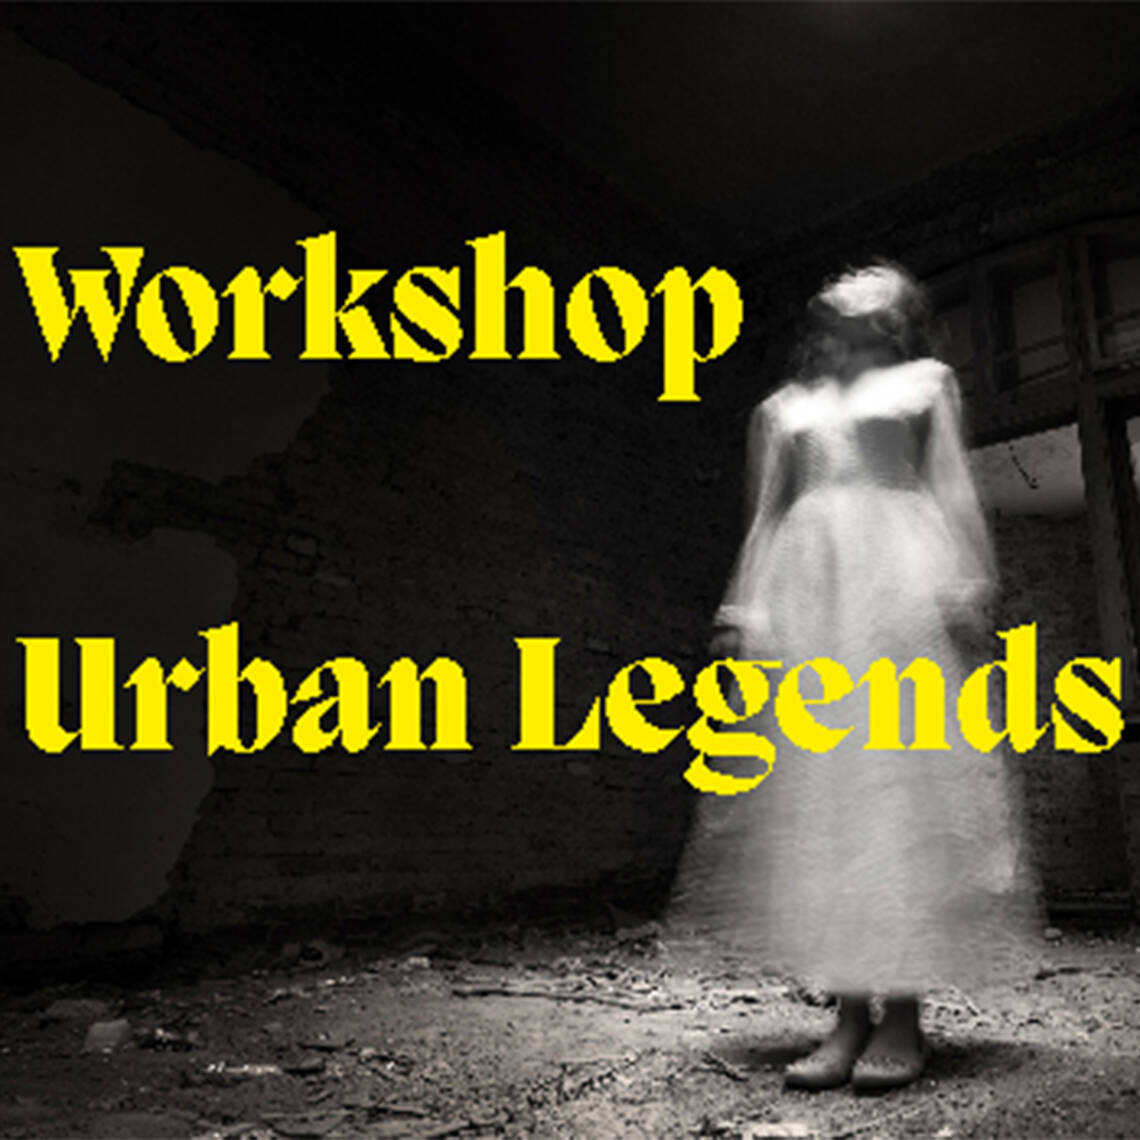 Verzerrtes Bild einer Frau mit weissem Kleid, barfuss in einem Raum stehend. Auf dem Bild steht geschrieben: Workshop Urban Legends